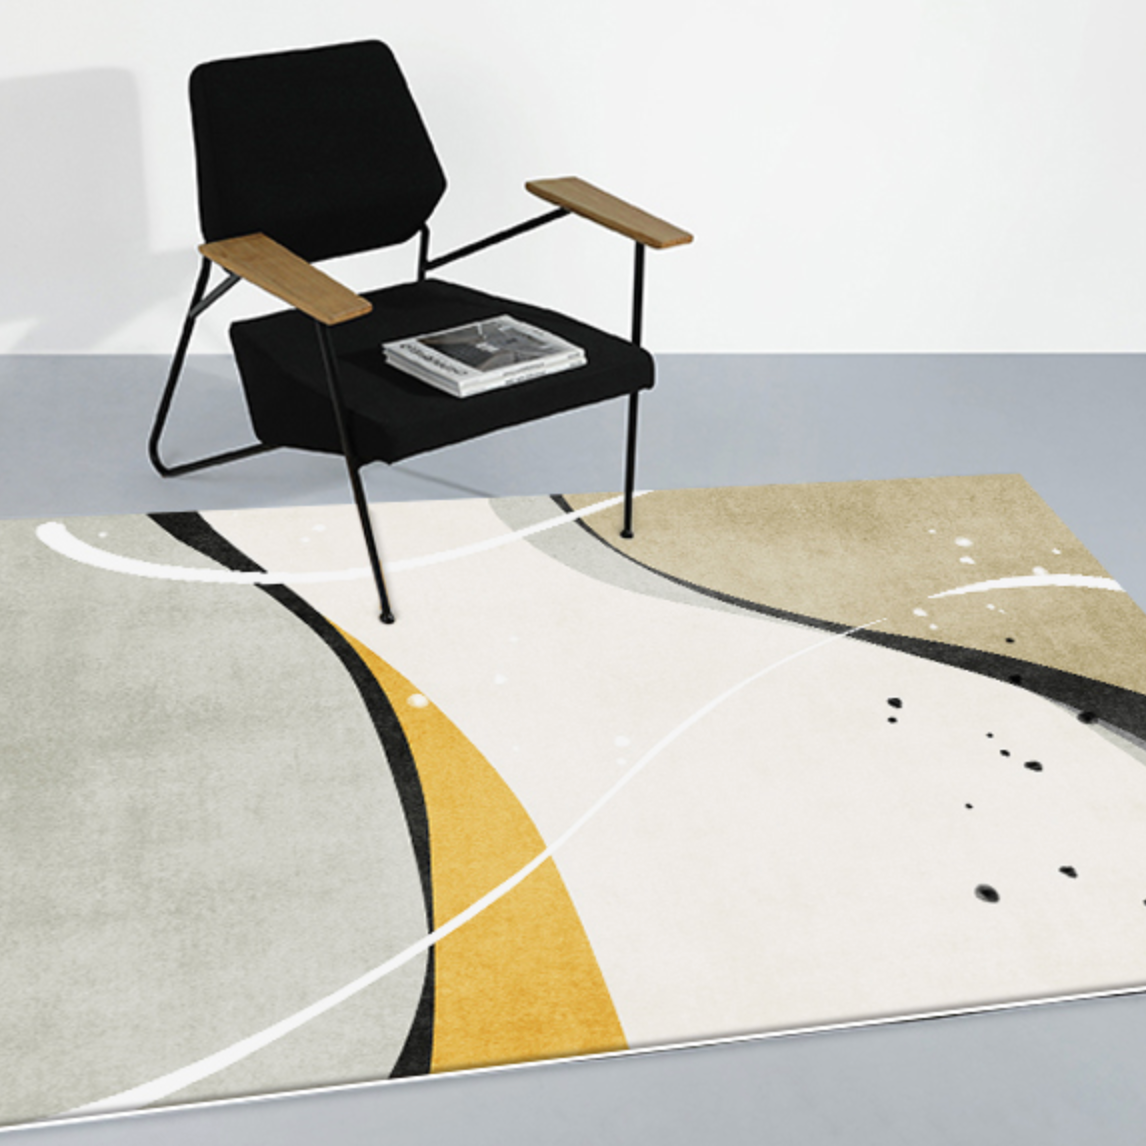 3design square carpet